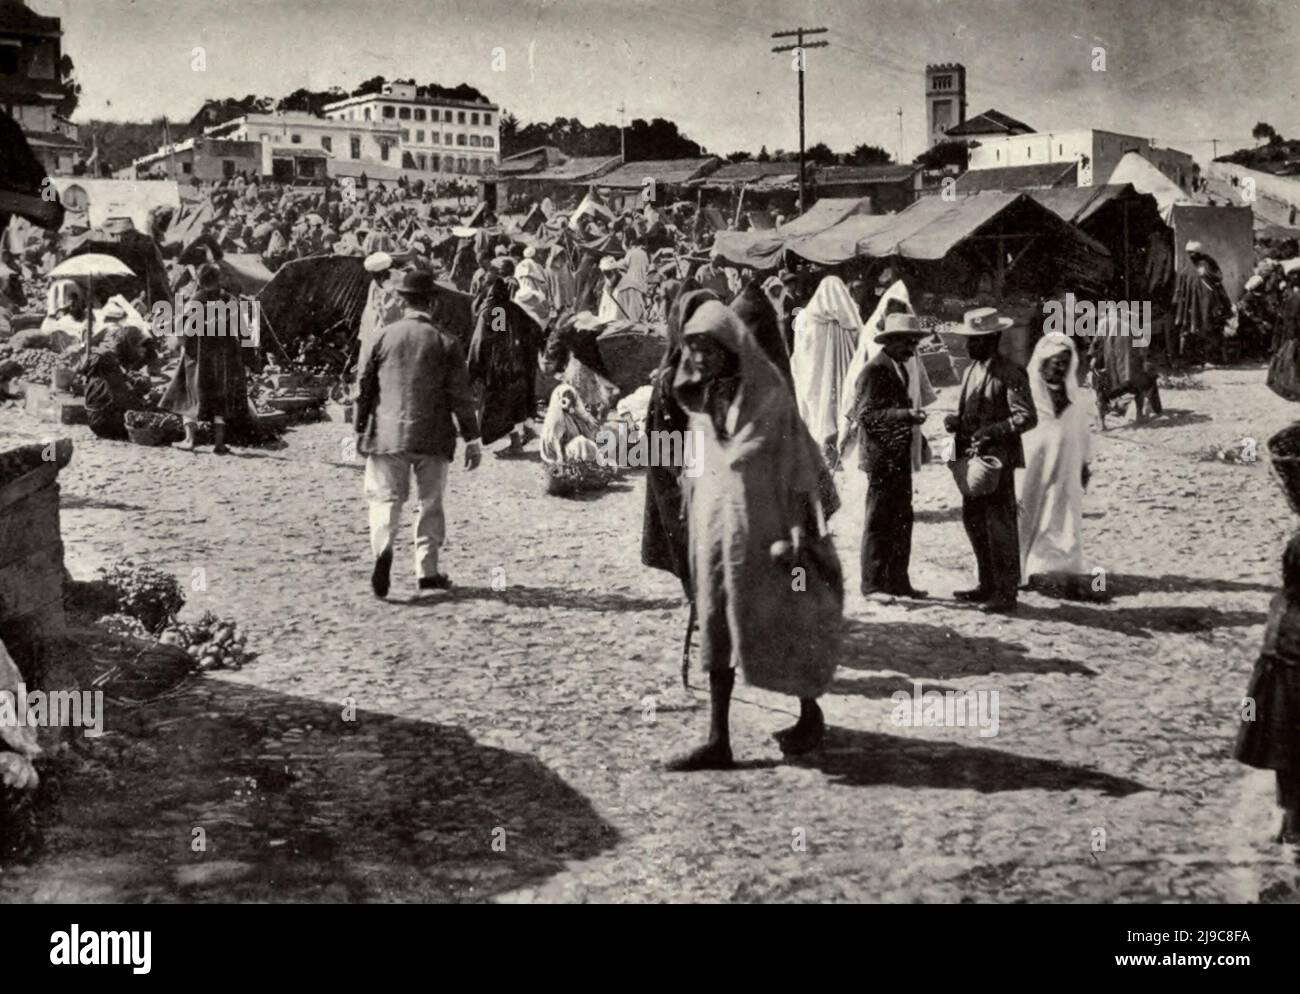 La place du marché à Tanger, au Maroc, vers 1910 Banque D'Images